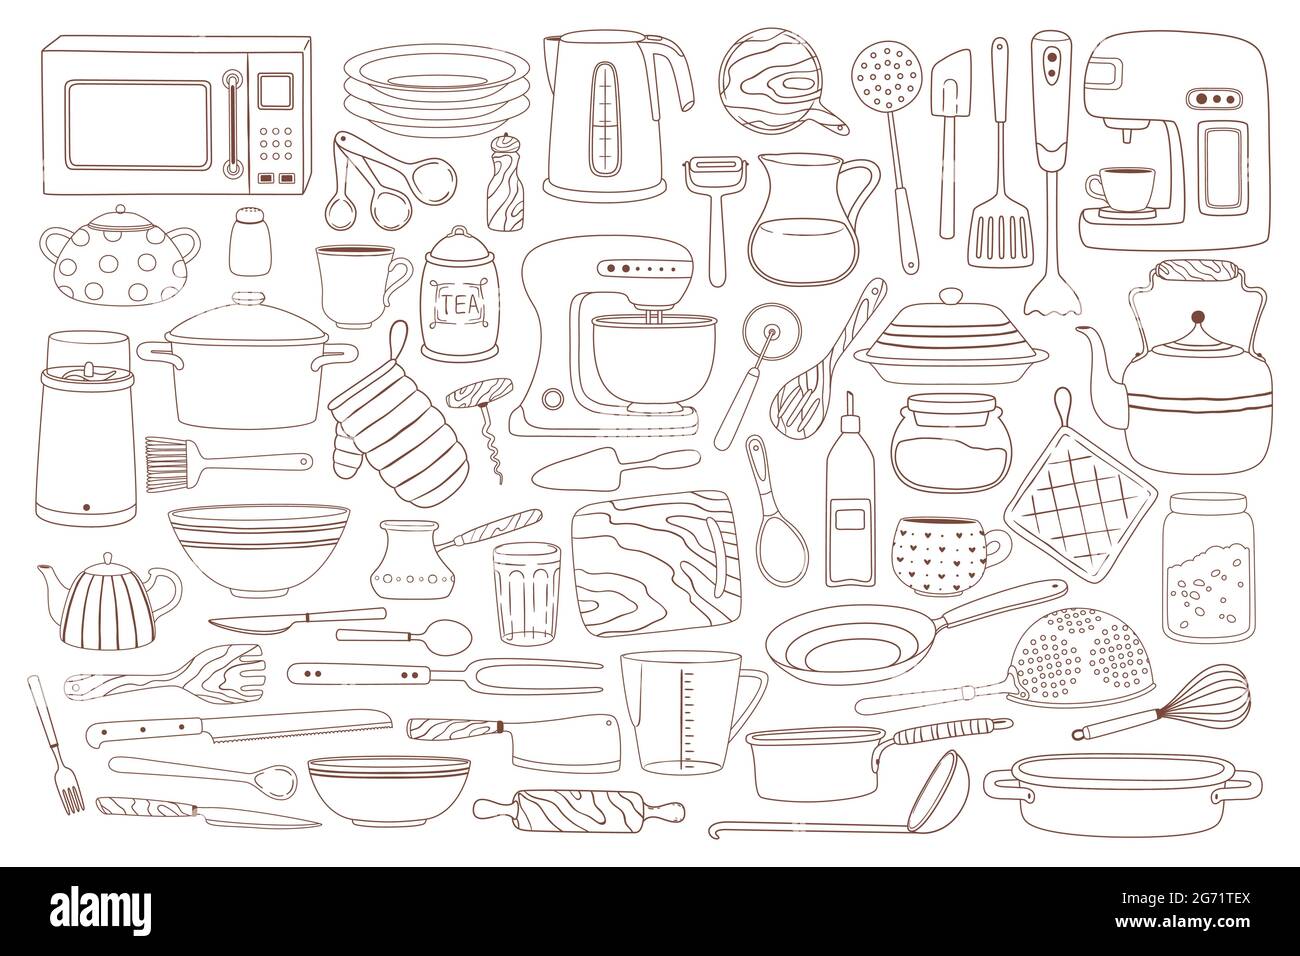 Kitchen utensils, cooking stuff hand drawn sketch set, collection